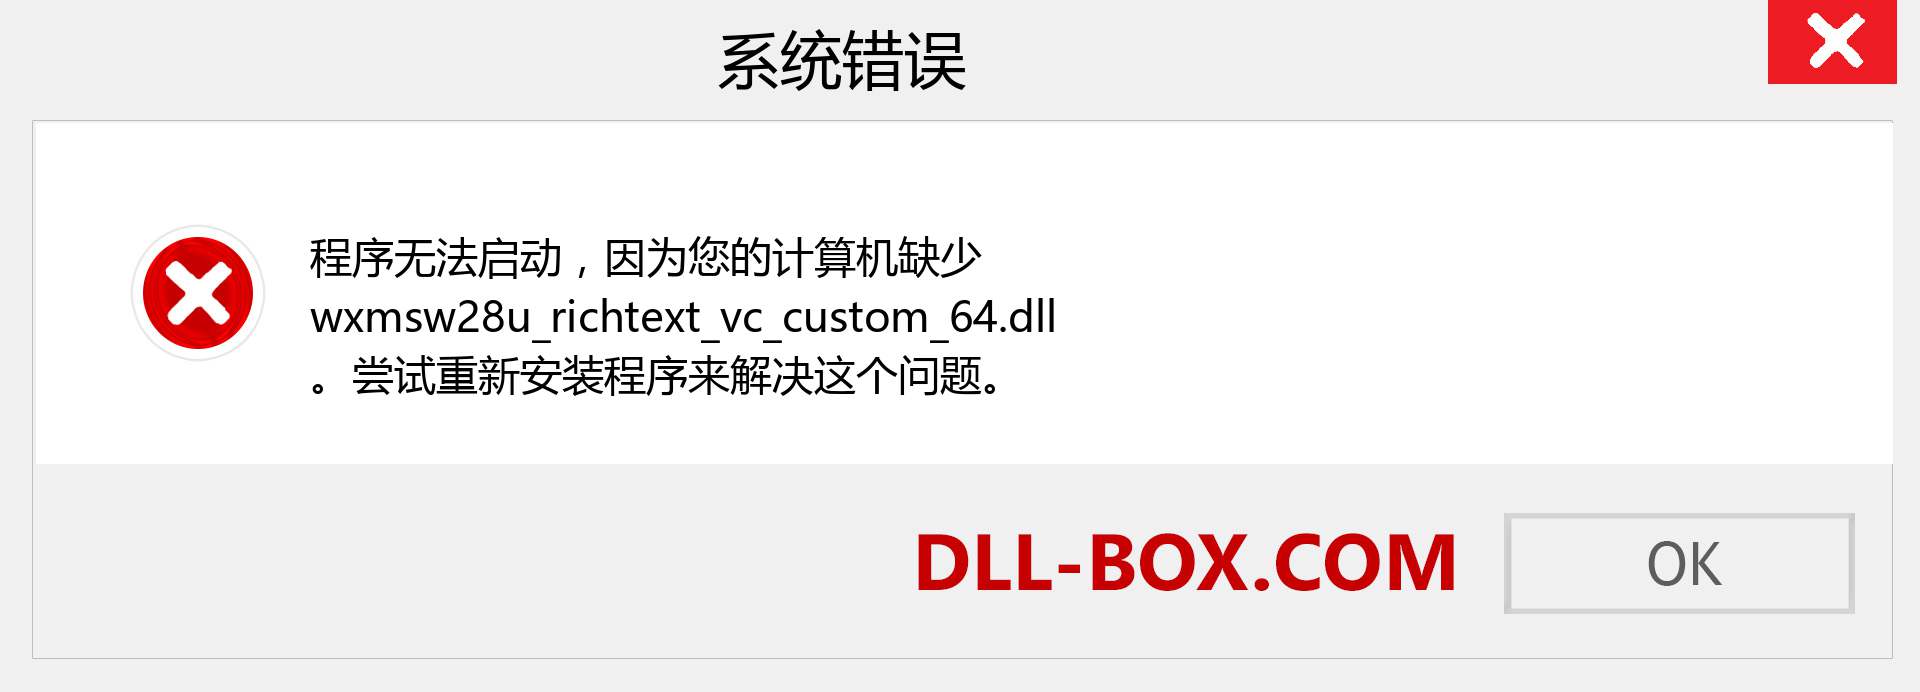 wxmsw28u_richtext_vc_custom_64.dll 文件丢失？。 适用于 Windows 7、8、10 的下载 - 修复 Windows、照片、图像上的 wxmsw28u_richtext_vc_custom_64 dll 丢失错误